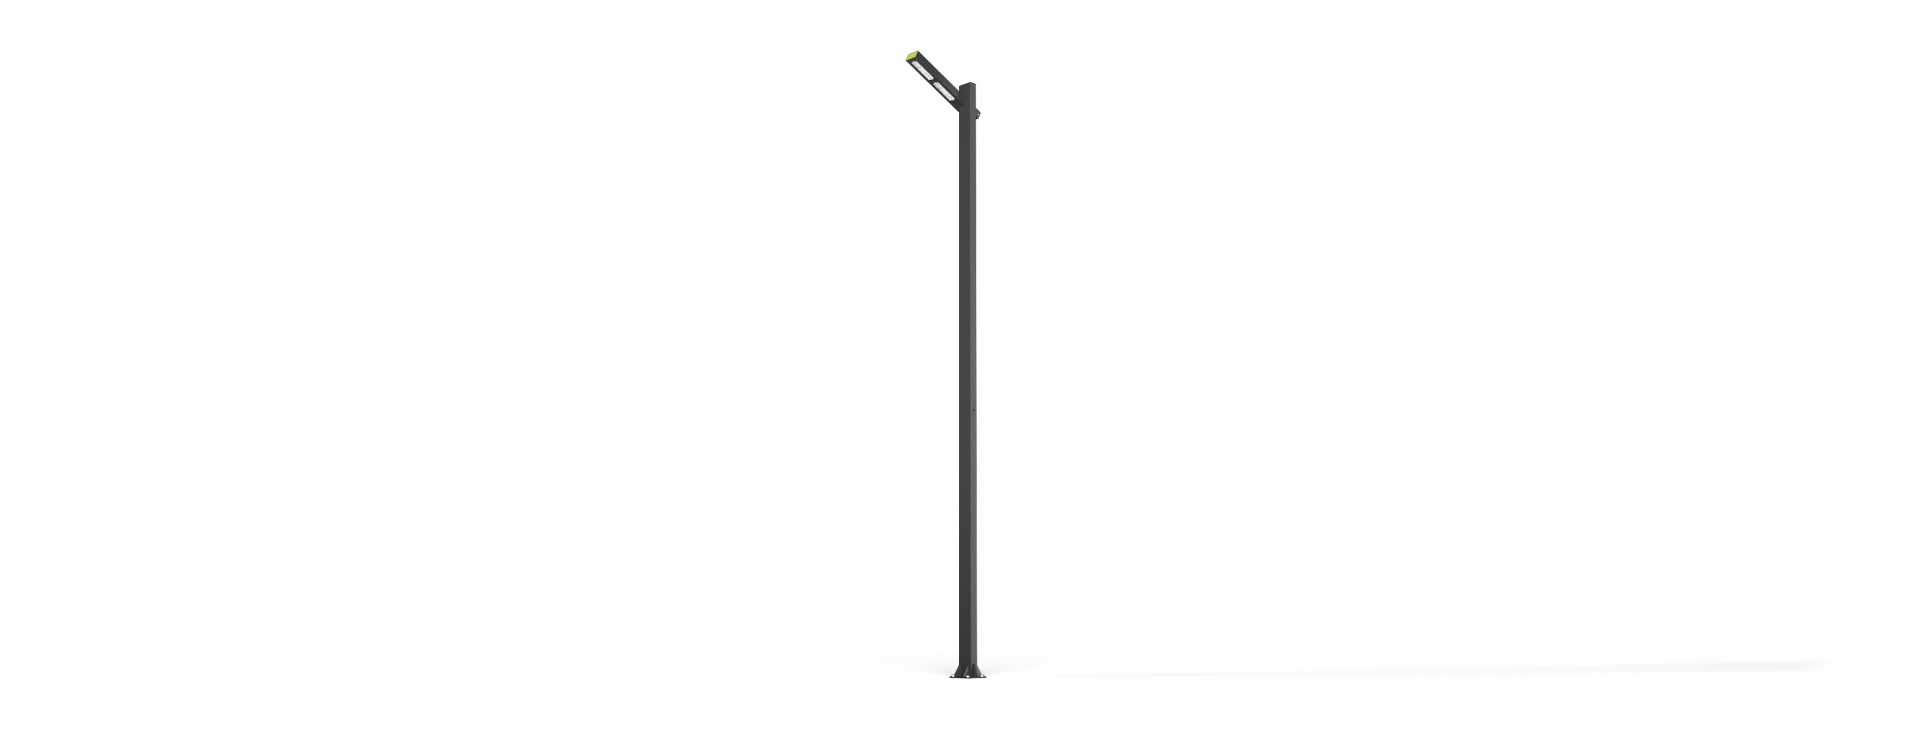 MALEVICH V3.1. Купить LED светильники MALEVICH RADUGA от производителя. Светильник садово-парковый со светодиодами.